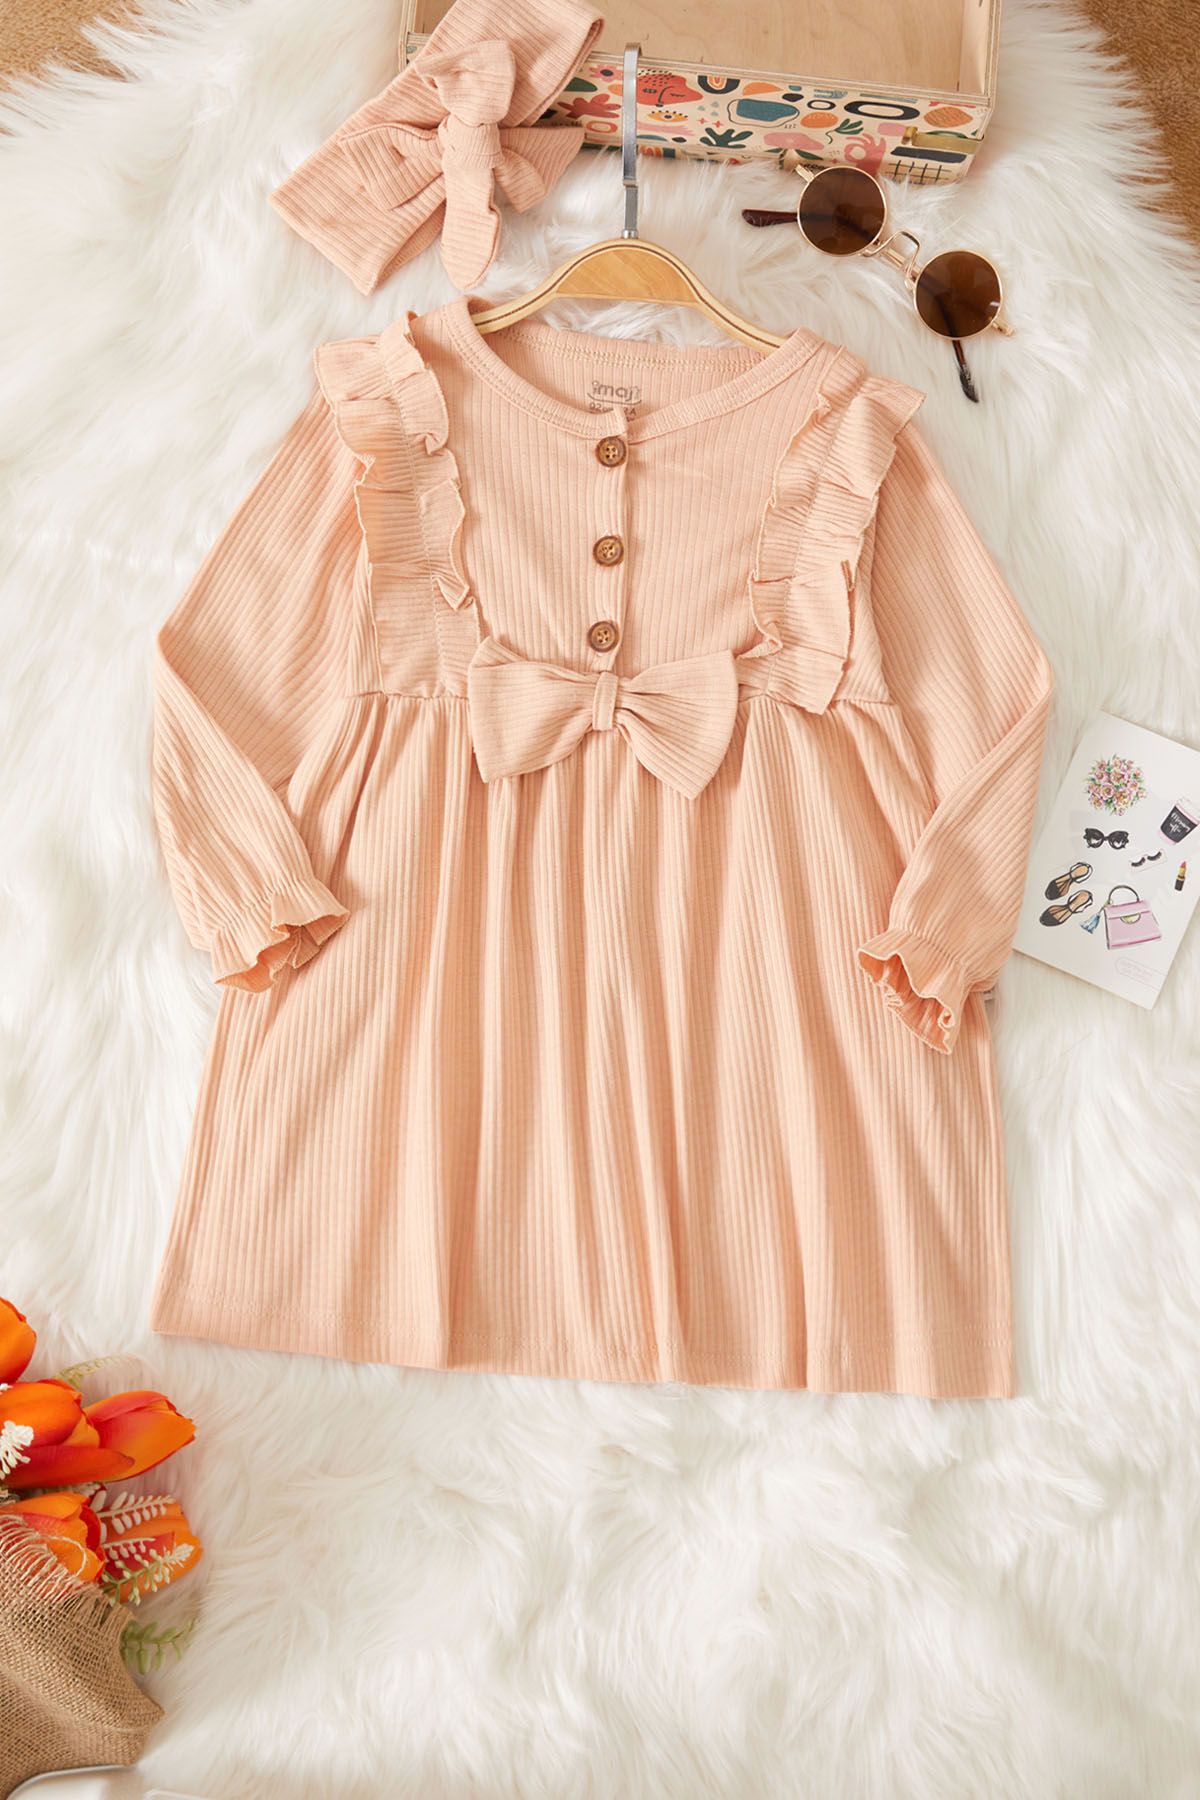 Cansın Mini Kız Bebek Fiyonk Detaylı Bandanalı Somon Elbise 17503